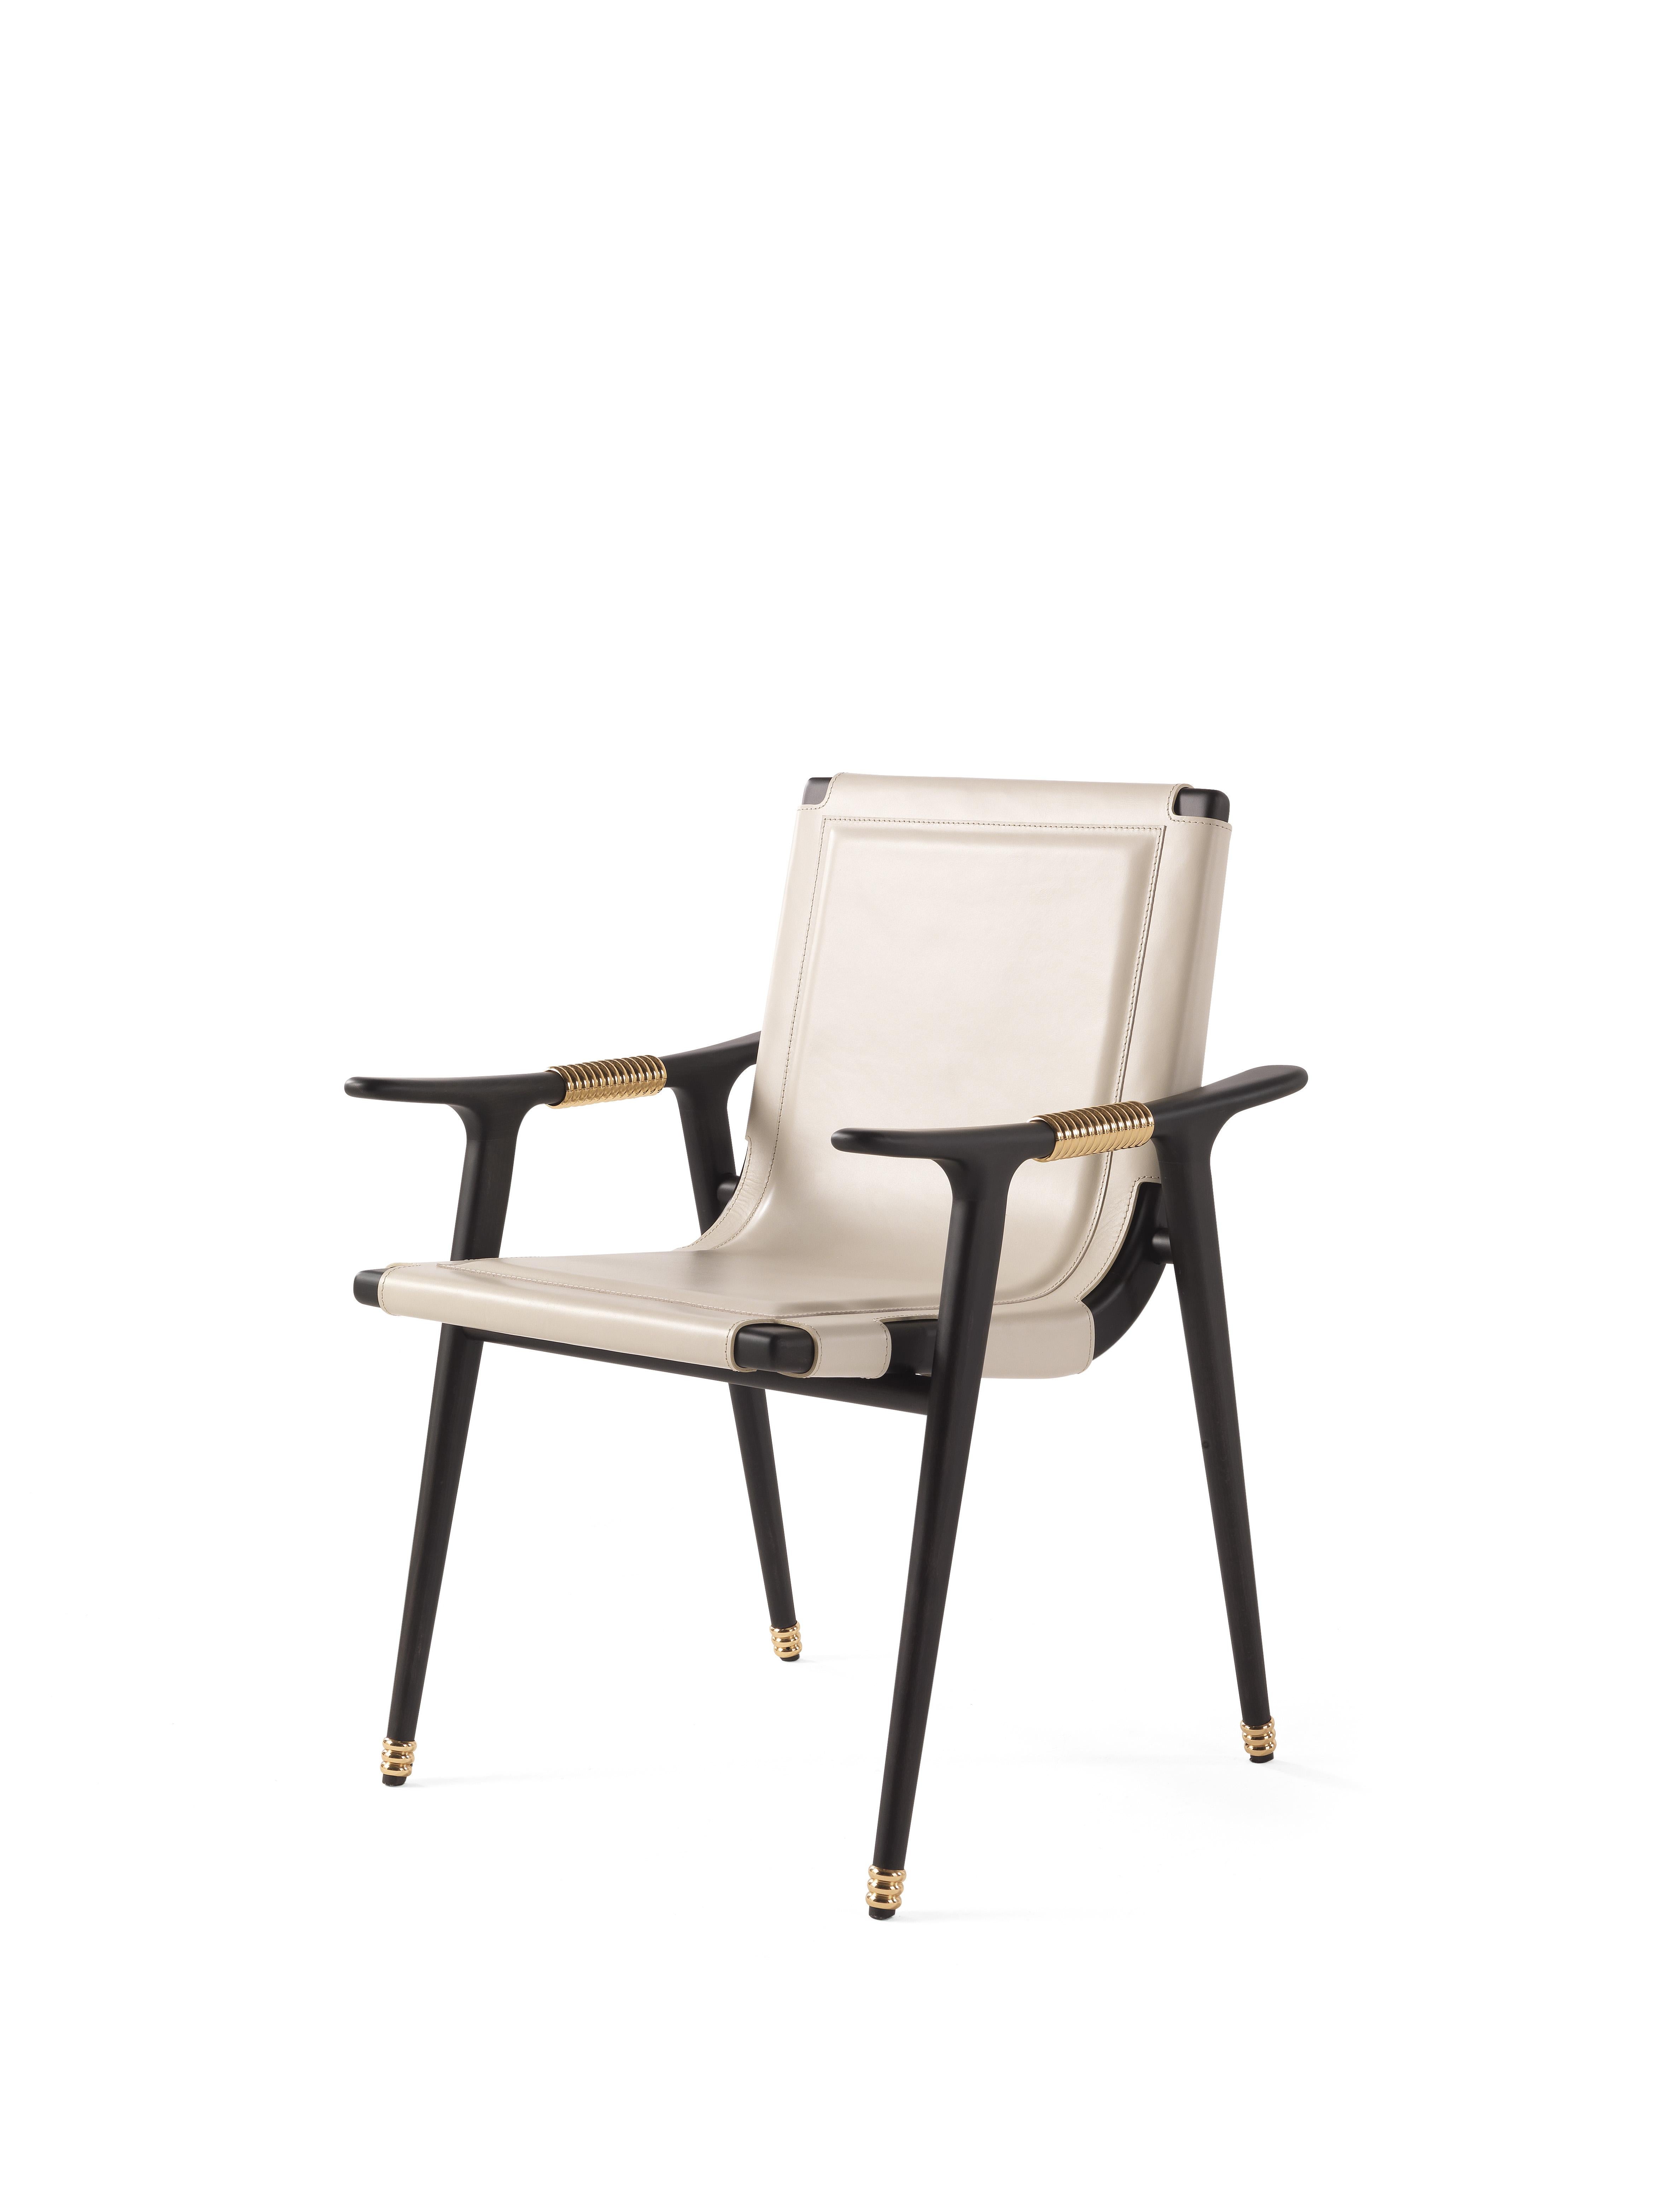 Dinka ist ein Stuhl voller faszinierender Details und anschaulicher Referenzen.
Die edle Polsterung aus elfenbeinfarbenem Sattelleder ist auf der Rückseite mit speziellen Ösen zum Schnüren versehen.
Die Struktur mit der matten, dunklen Wengè-Farbe